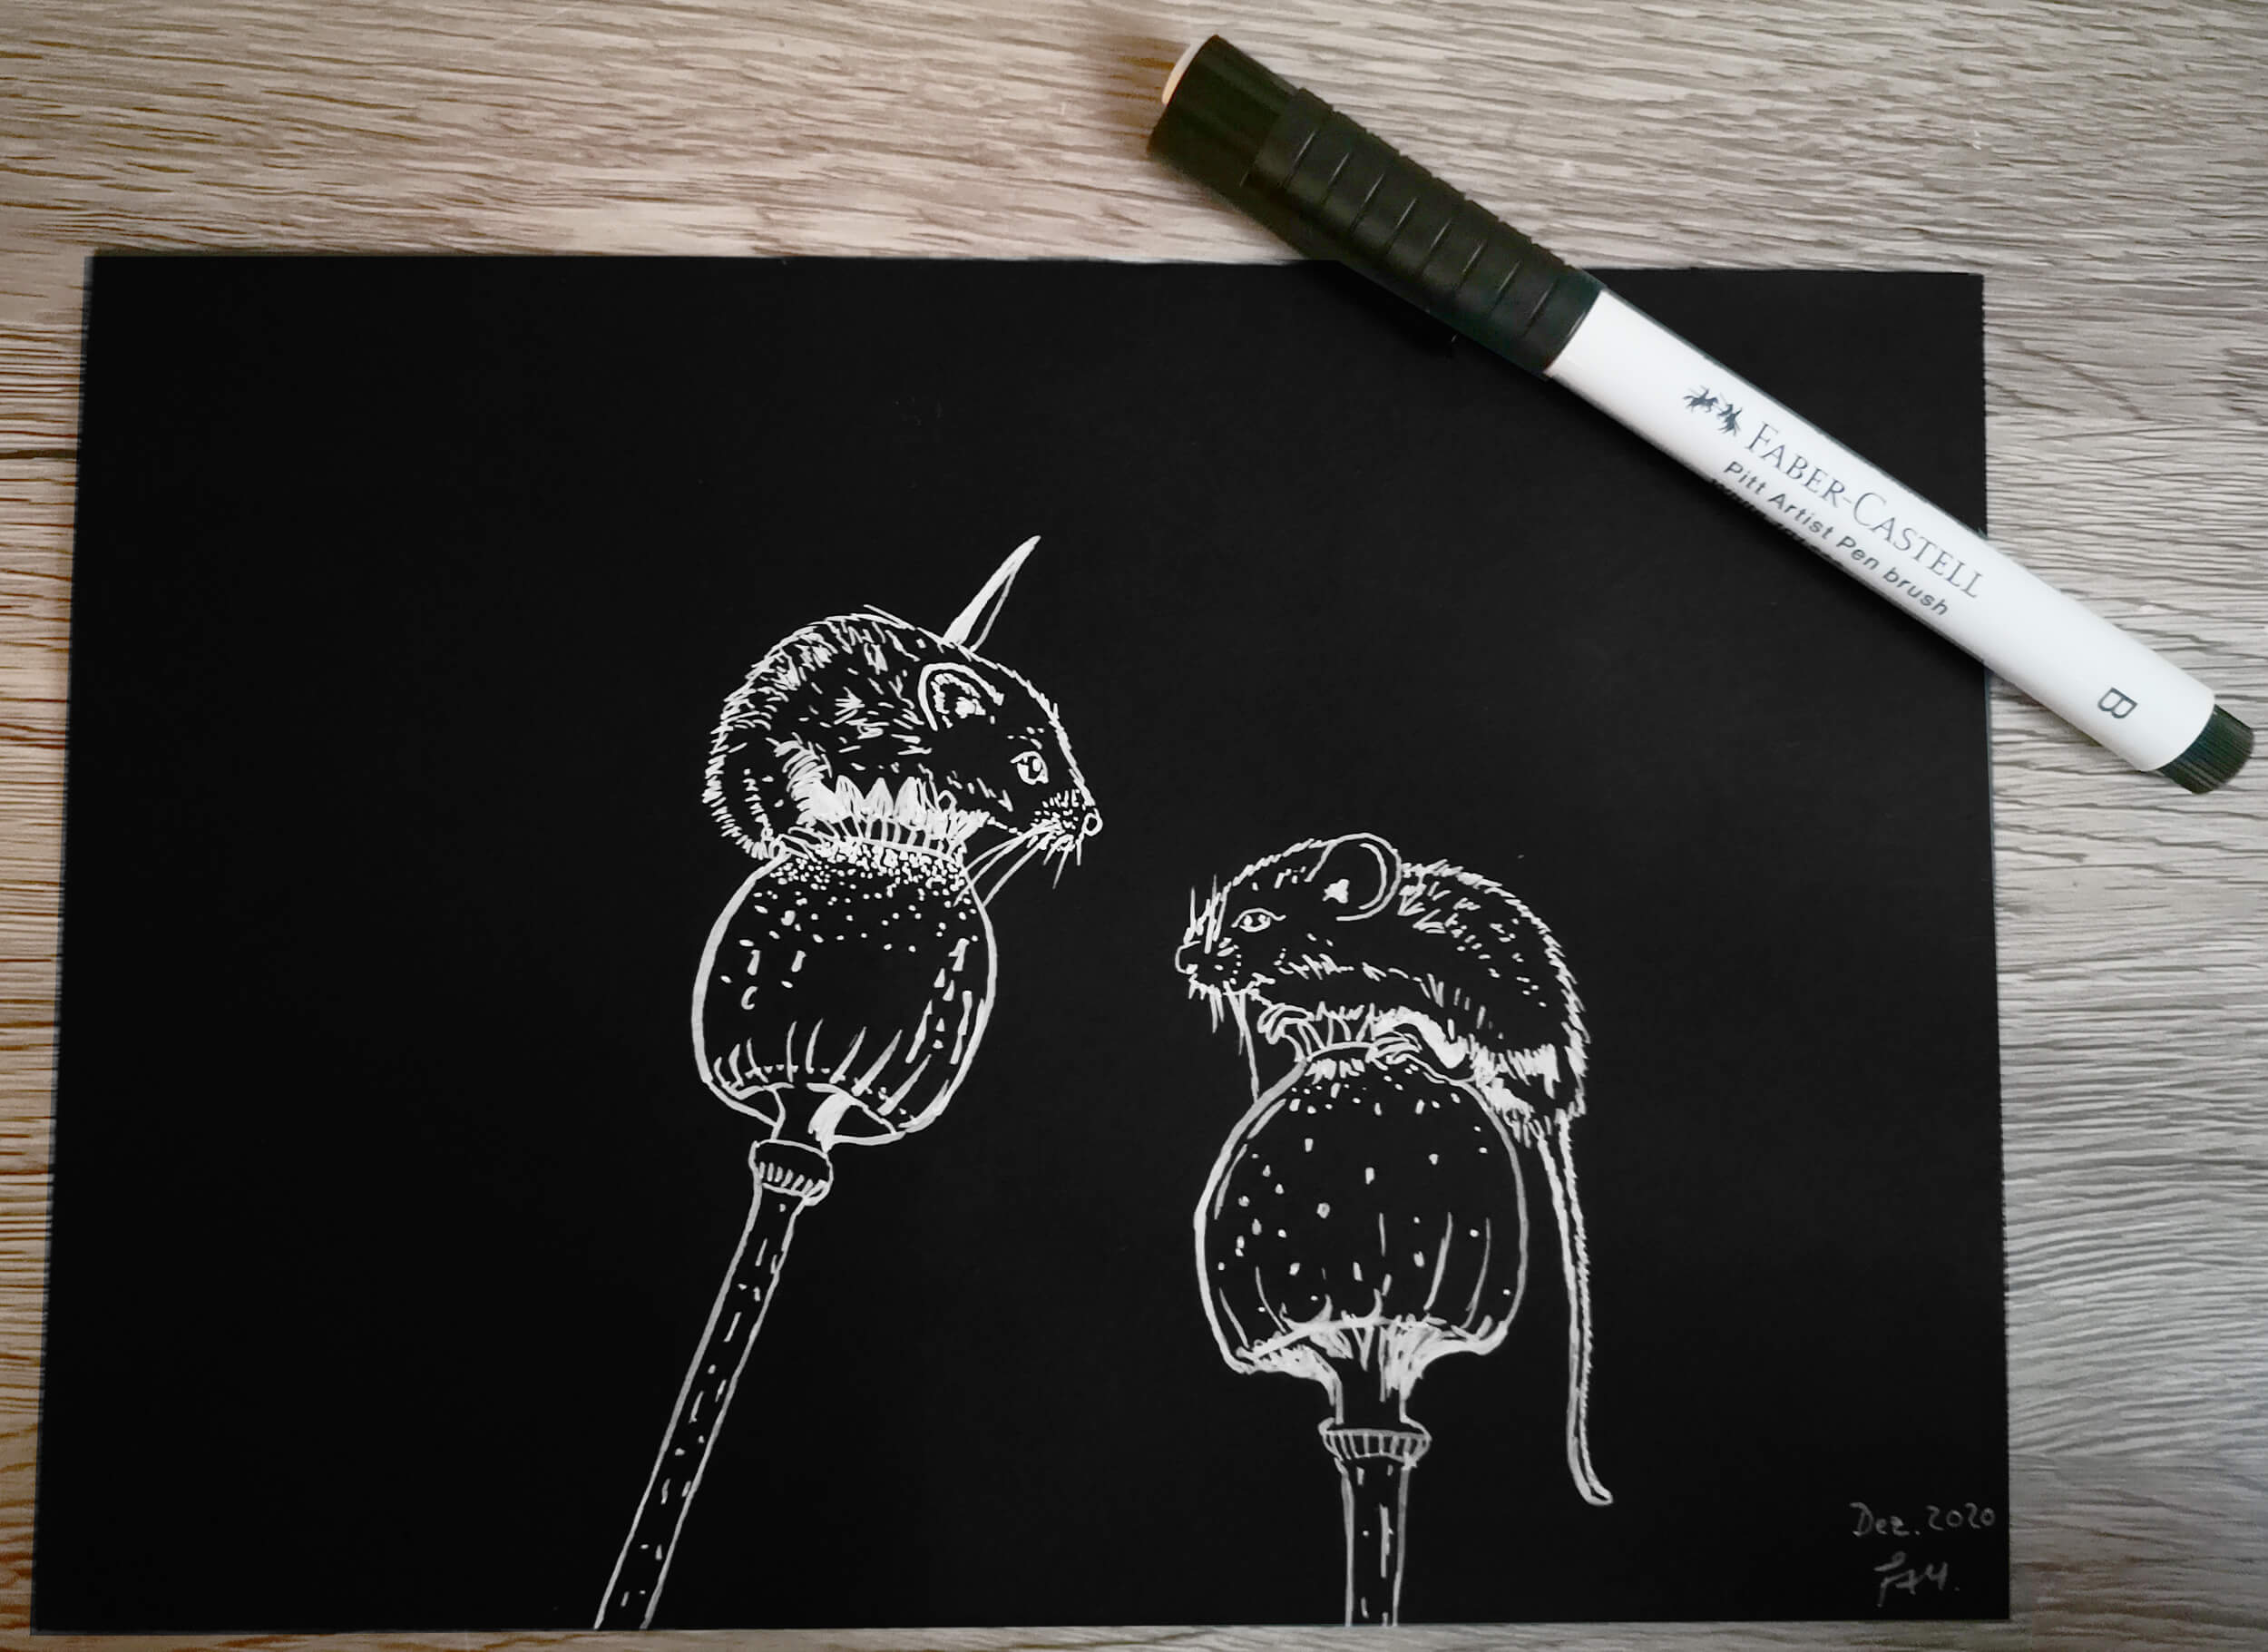 Mäuse in schwarz/weiß – Silhouettenbild zeichnen